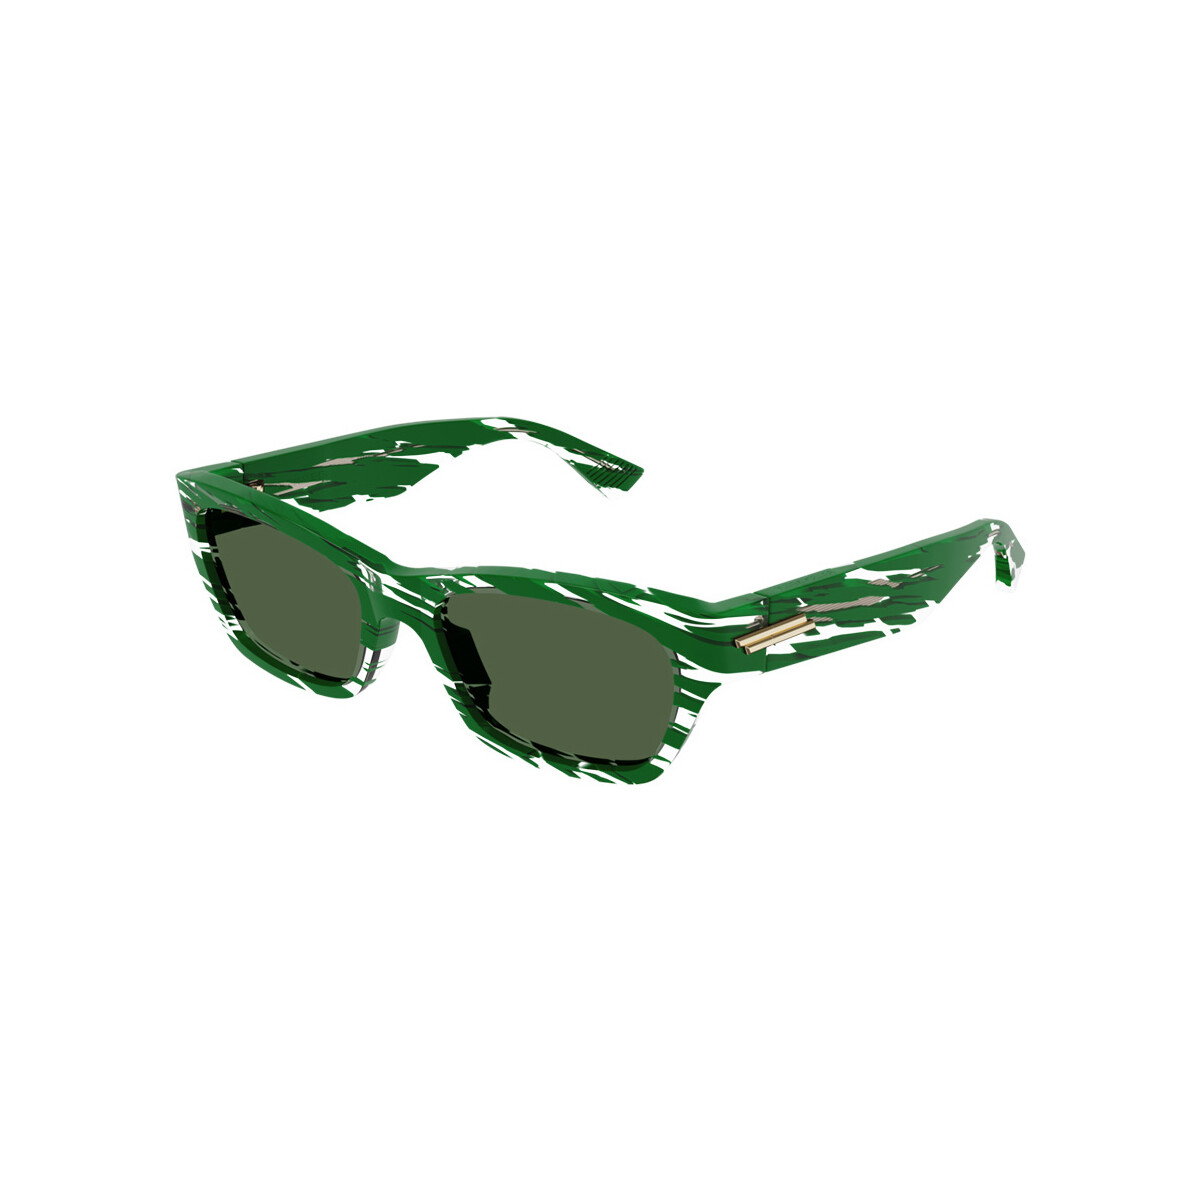 Orologi & Gioielli Occhiali da sole Bottega Veneta BV1143S Occhiali da sole, Verde/Verde, 55 mm Verde